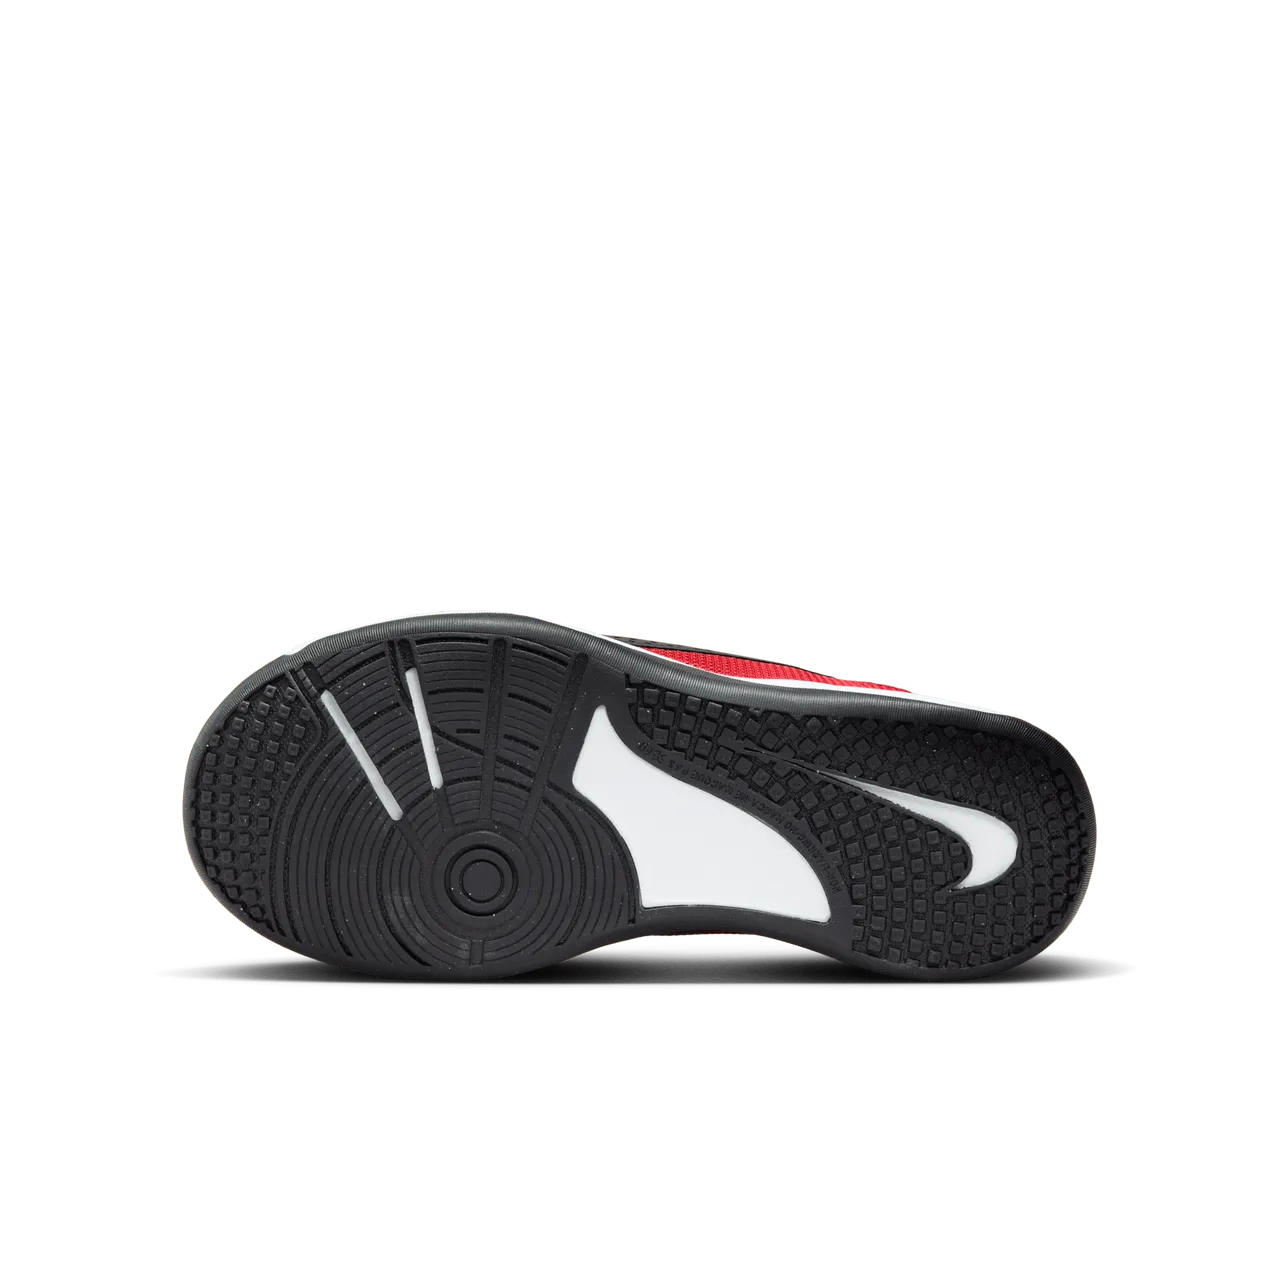 Nike Omni Multi-Court Zaalschoenen voor kids - Rood